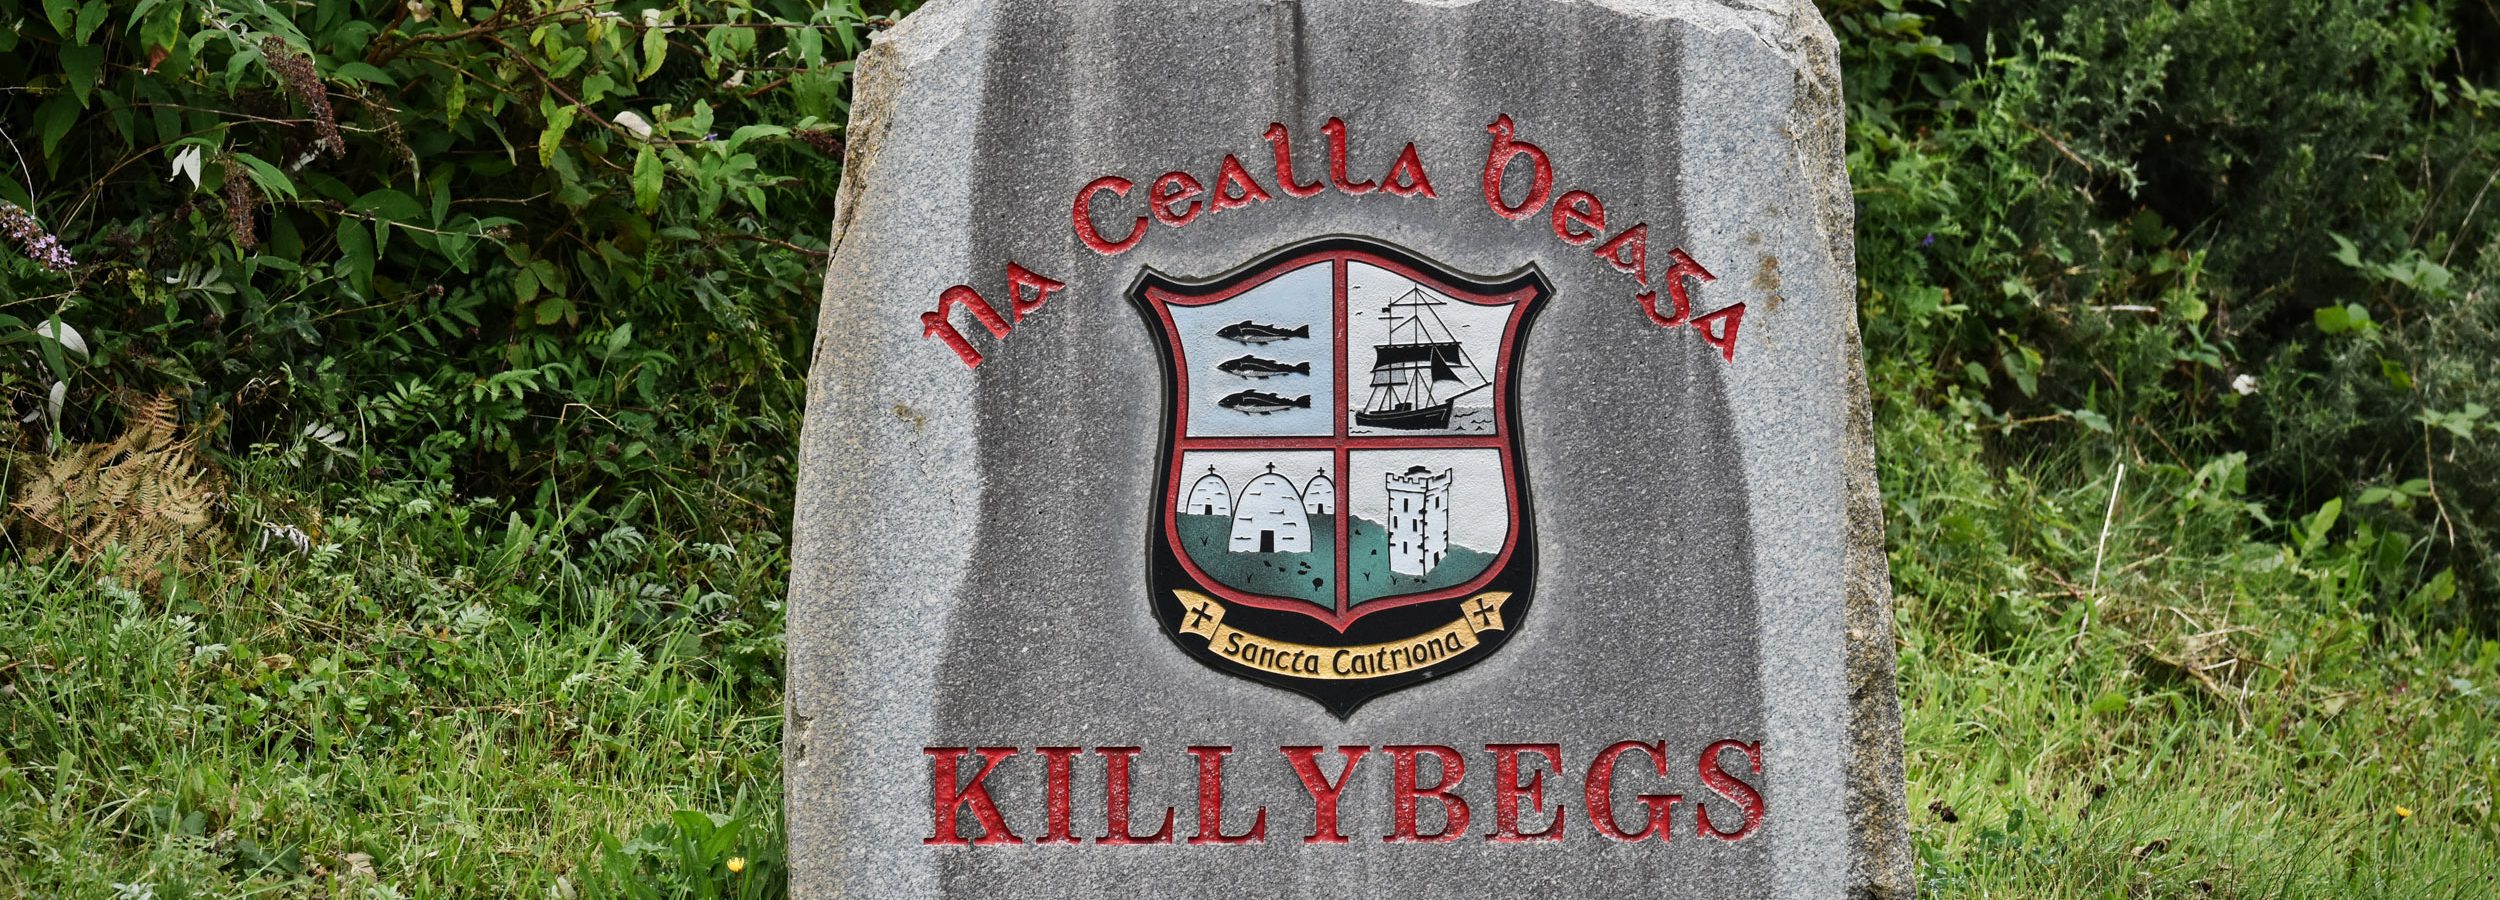 Killybegs, Irlandia